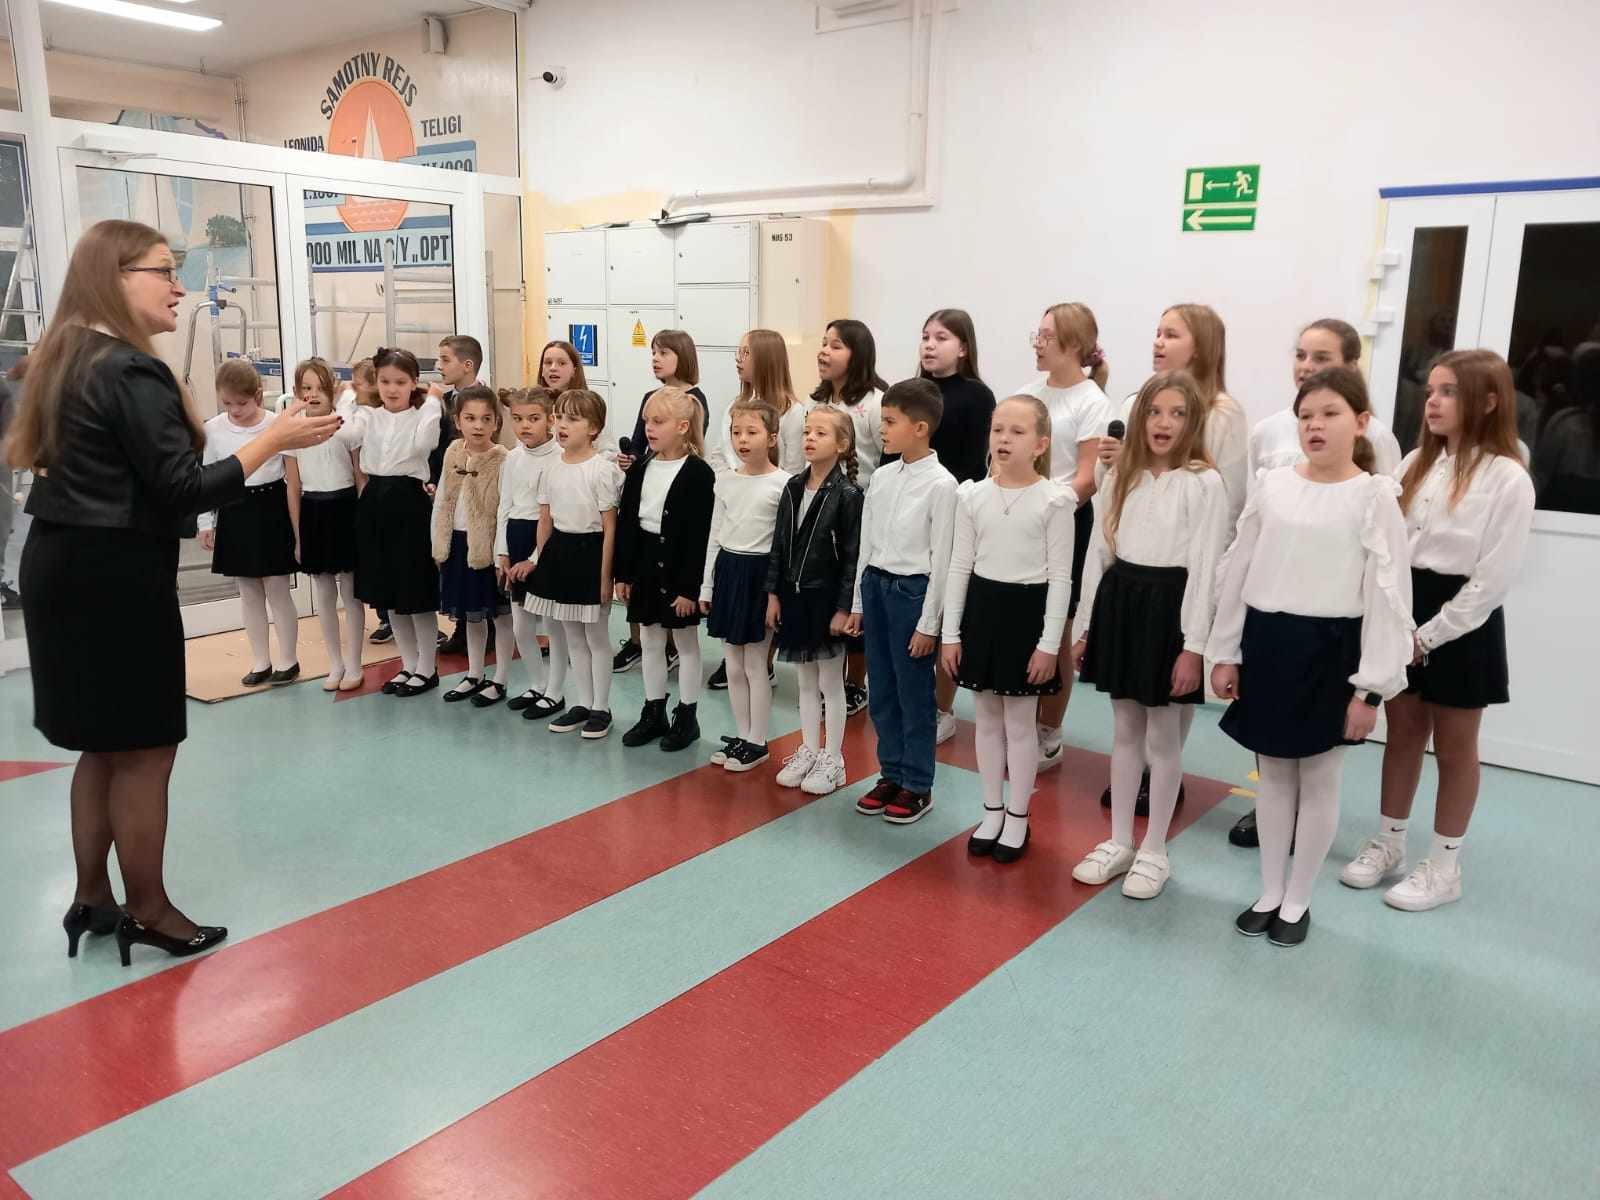 Chór szkolny pod przewodnictwem pani Klaudii Szczepkowskiej śpiewa przy wejściu do szkoły.